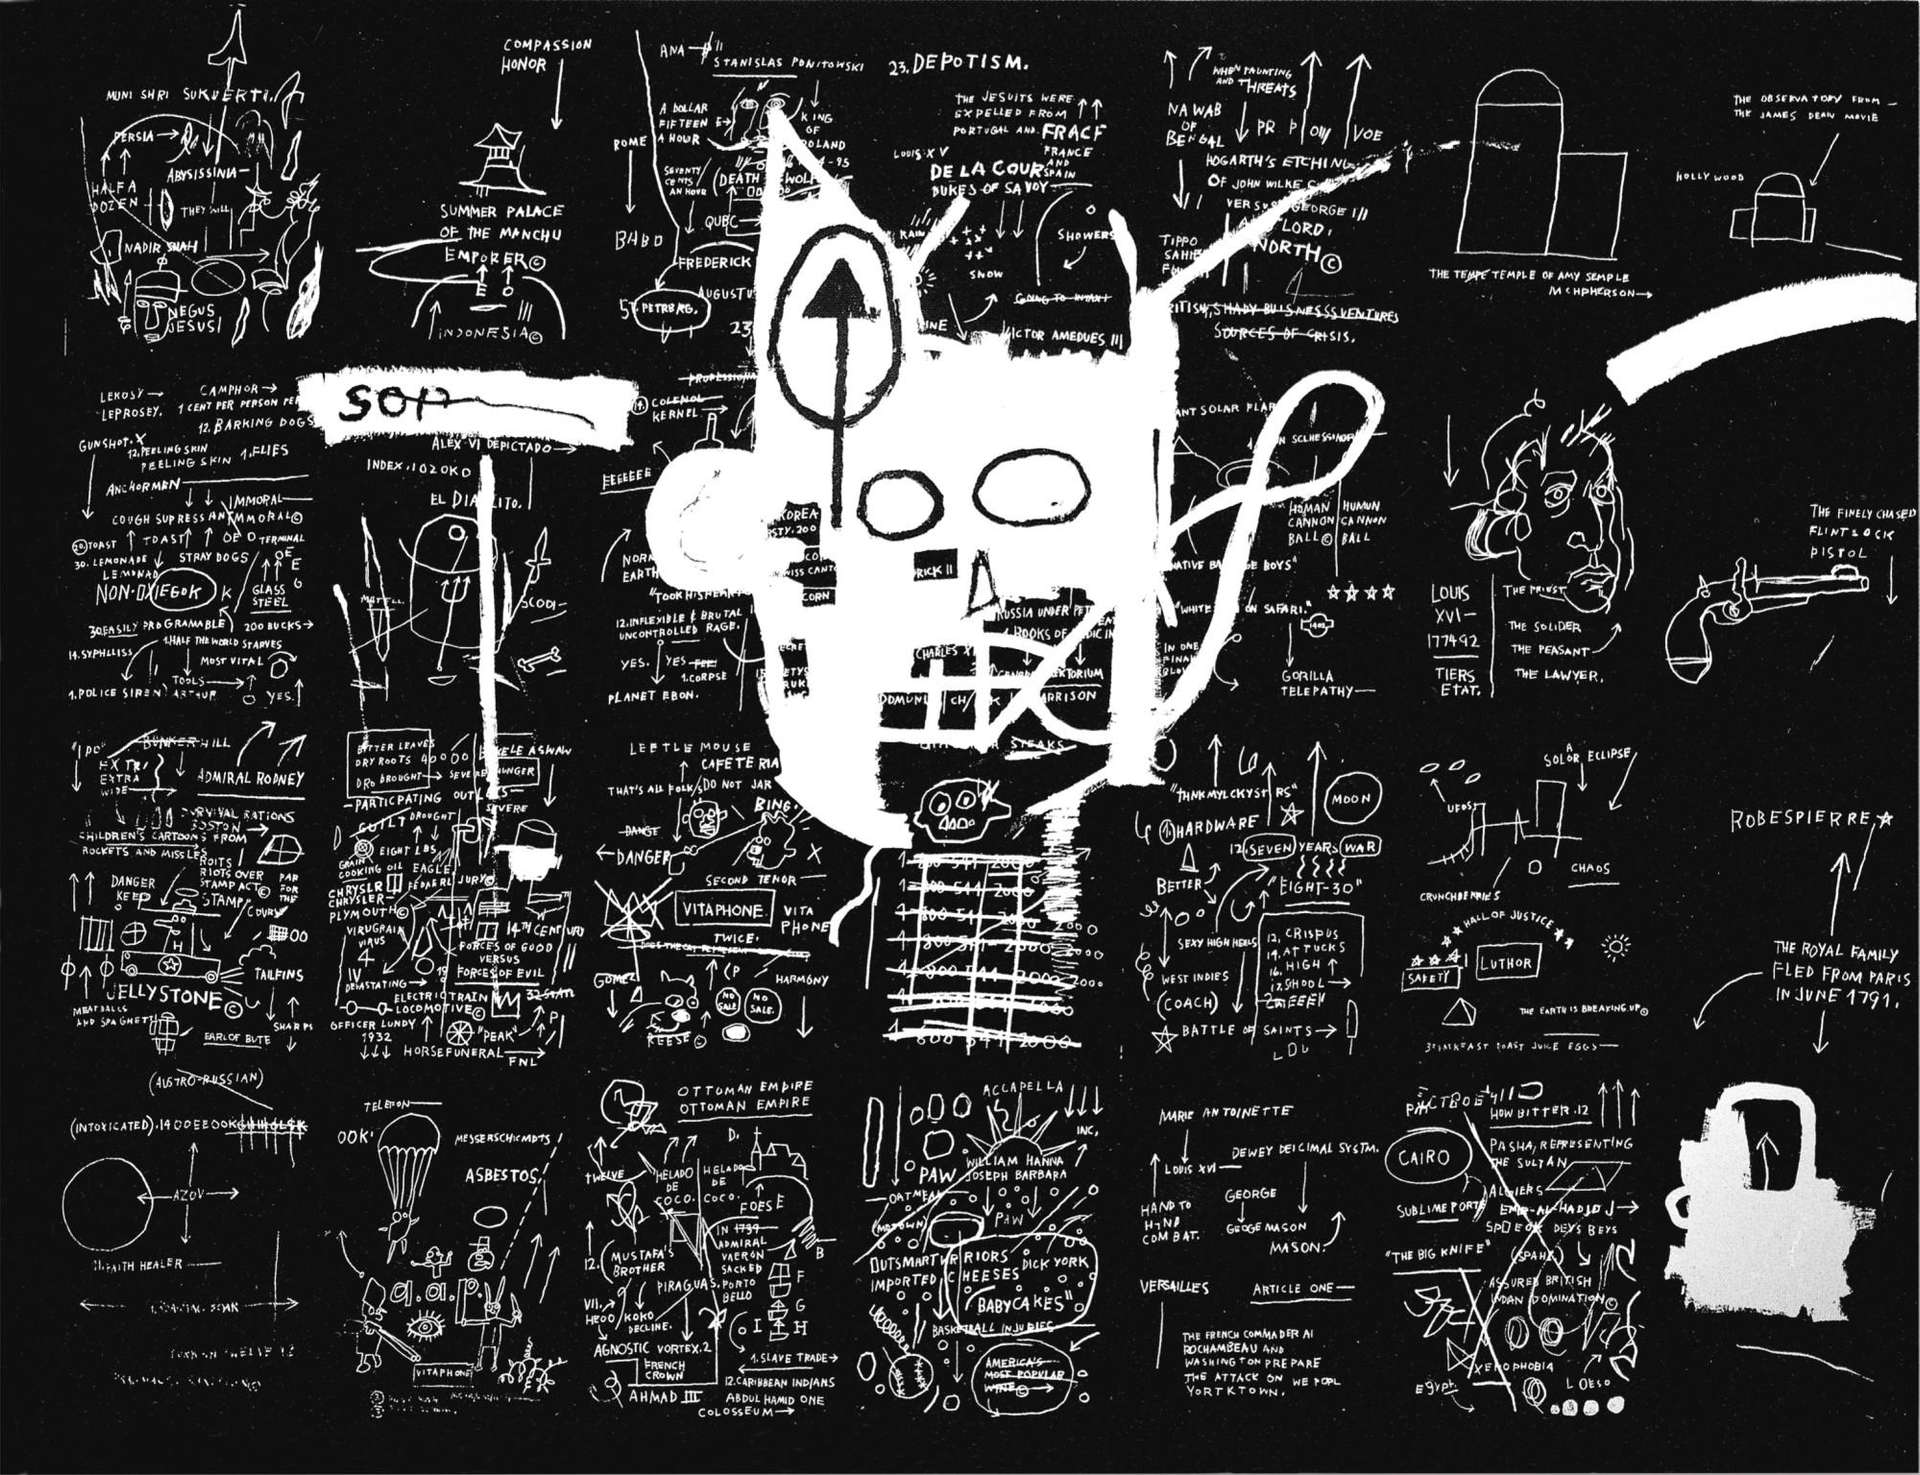 Untitled - Signed Print by Jean-Michel Basquiat 1983 - MyArtBroker